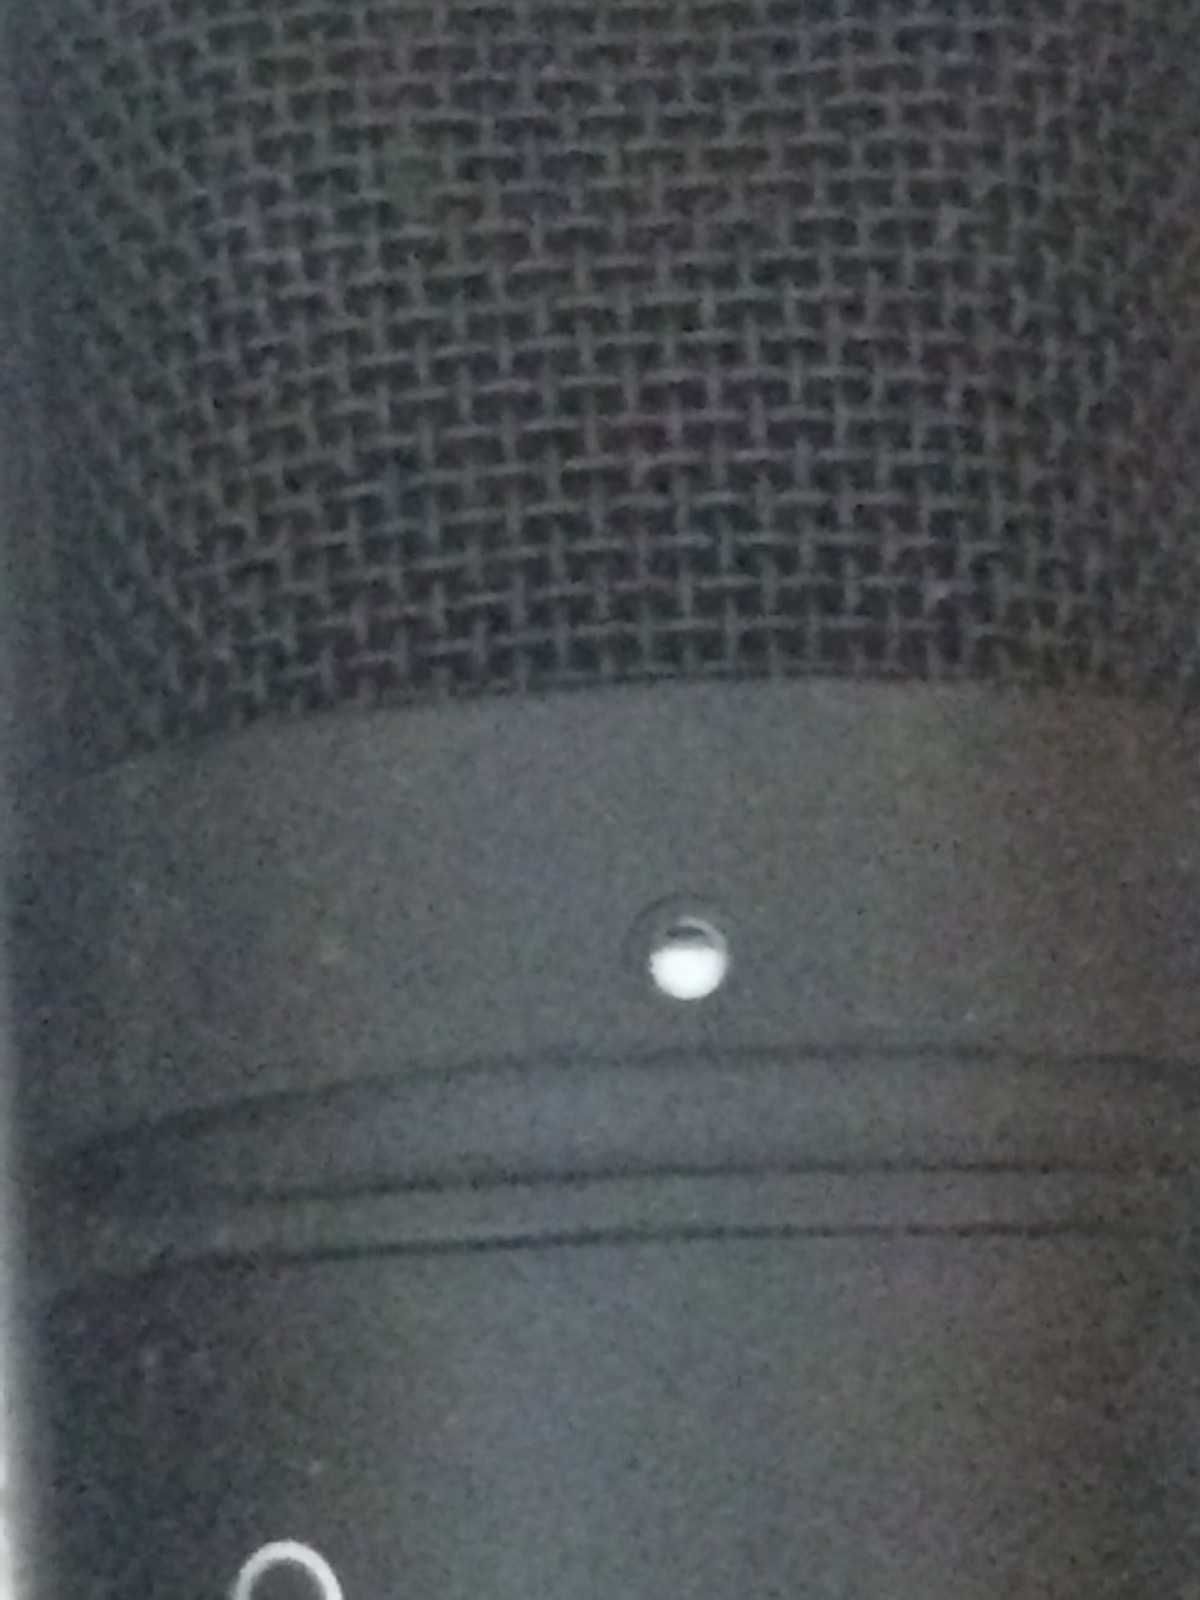 Мікрофон вокальний Tascam TM-80 конденсаторний кардіоїдний